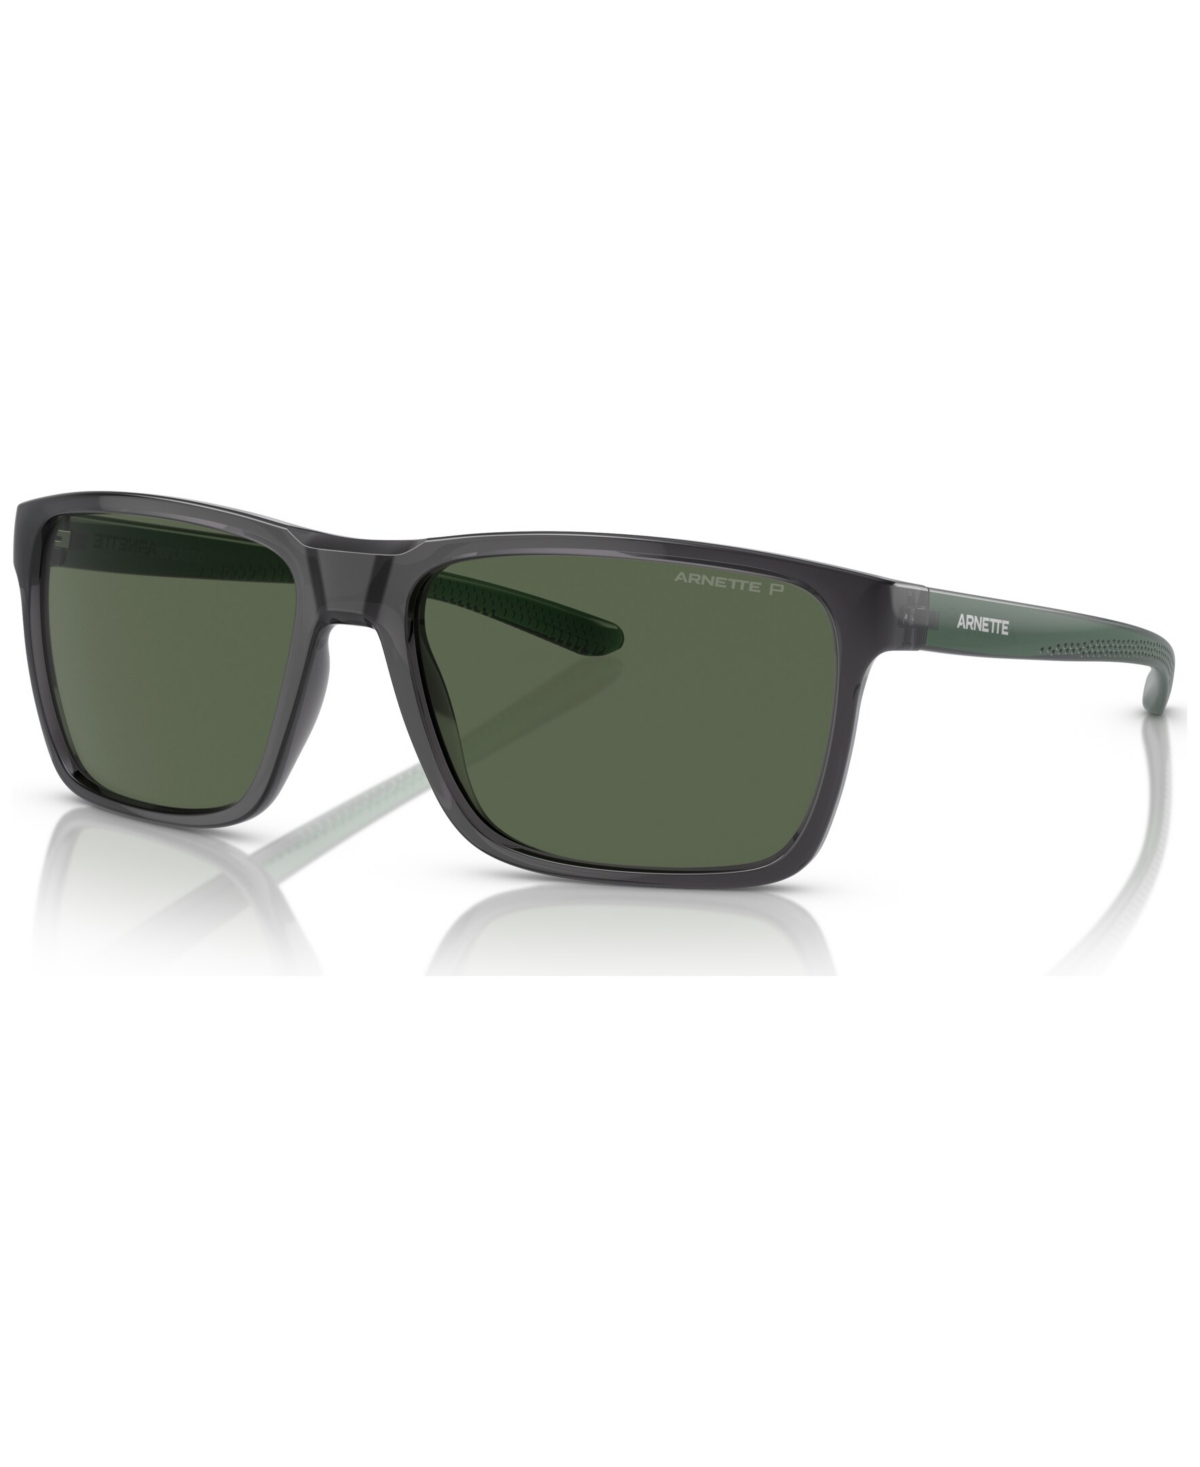 Men's Polarized Sunglasses, Sokatra - Matte Black